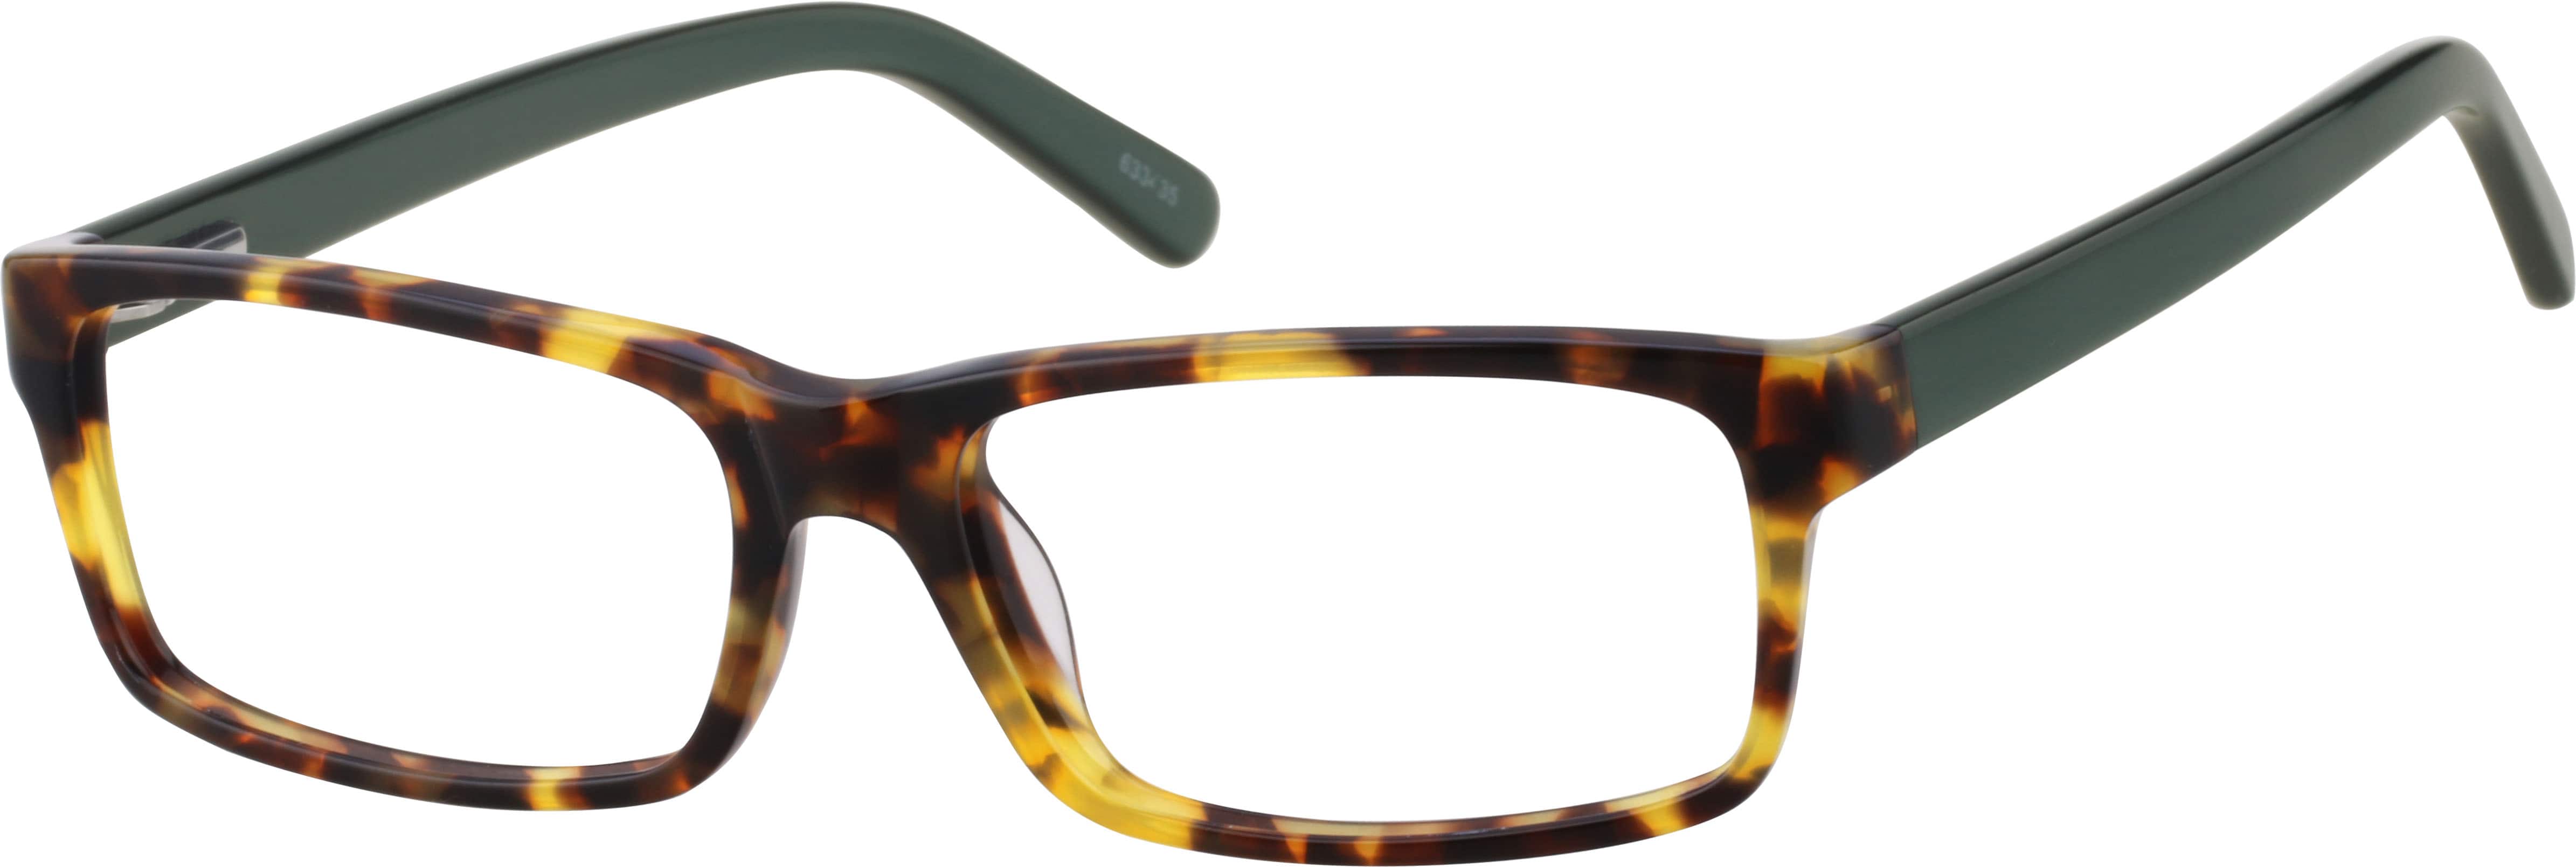 Tortoiseshell Acetate Full Rim Frame With Spring Hinges 6334 Zenni Optical Eyeglasses